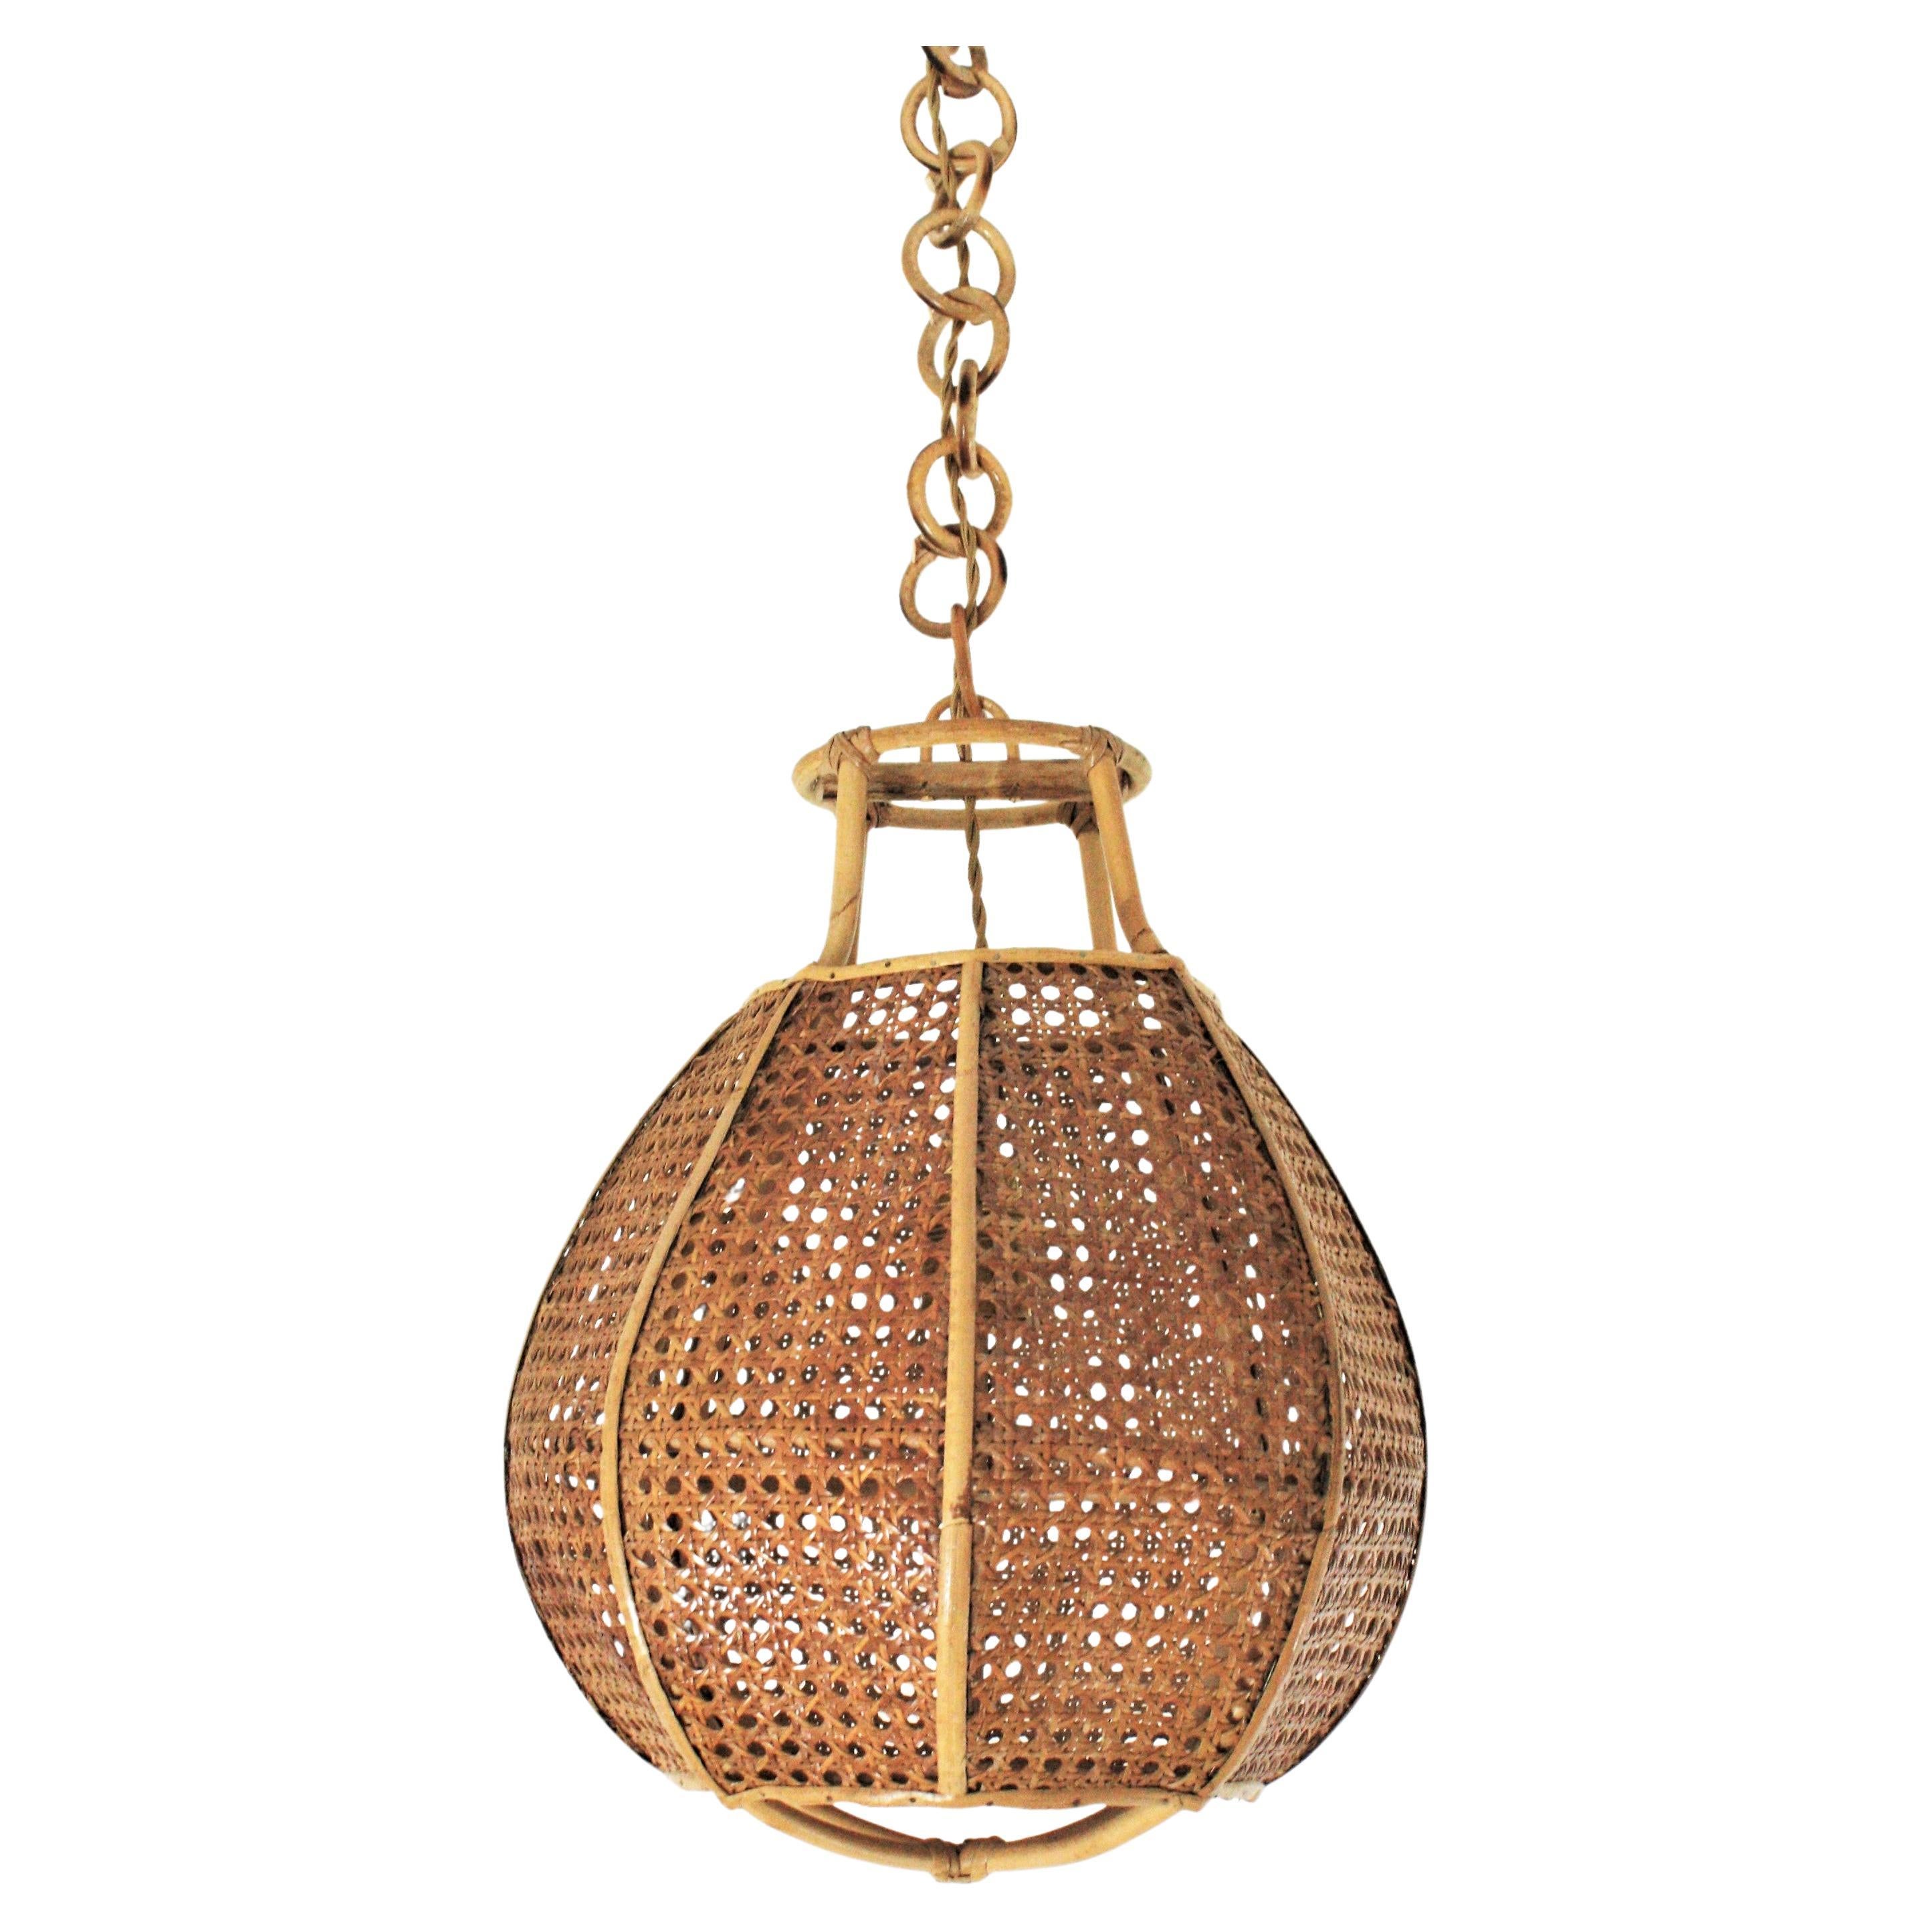 Italienisch Modernist Wicker Wire Rattan Globe Pendelleuchte Hanging Light